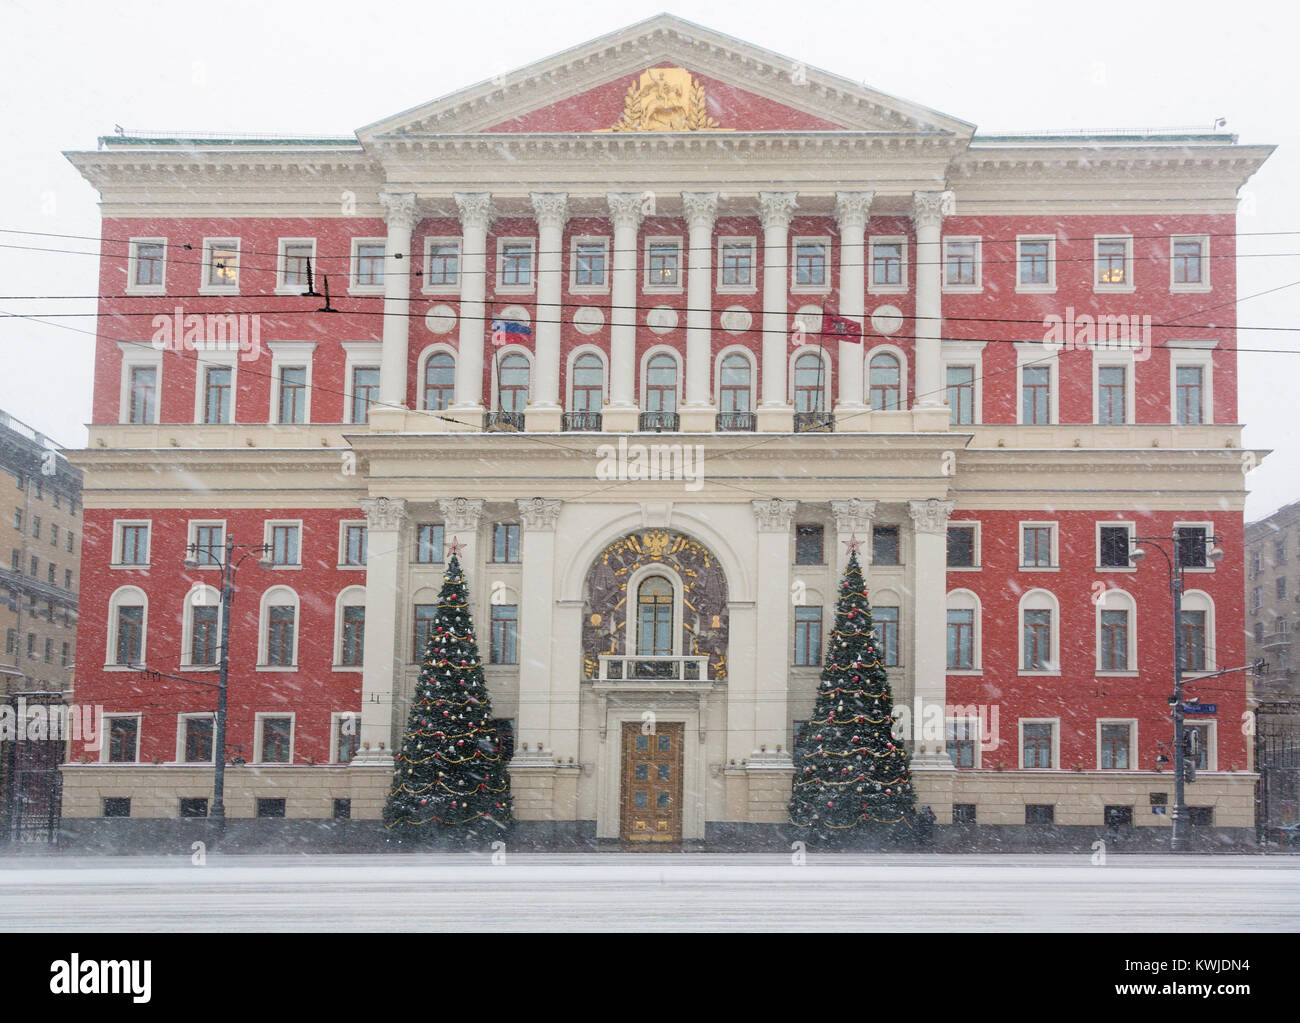 Vue de la Mairie de Moscou en bâtiment de neige anormale du centre de Moscou sur la rue Tverskaya, au cours de la nouvelle année Vacances, Russie Banque D'Images